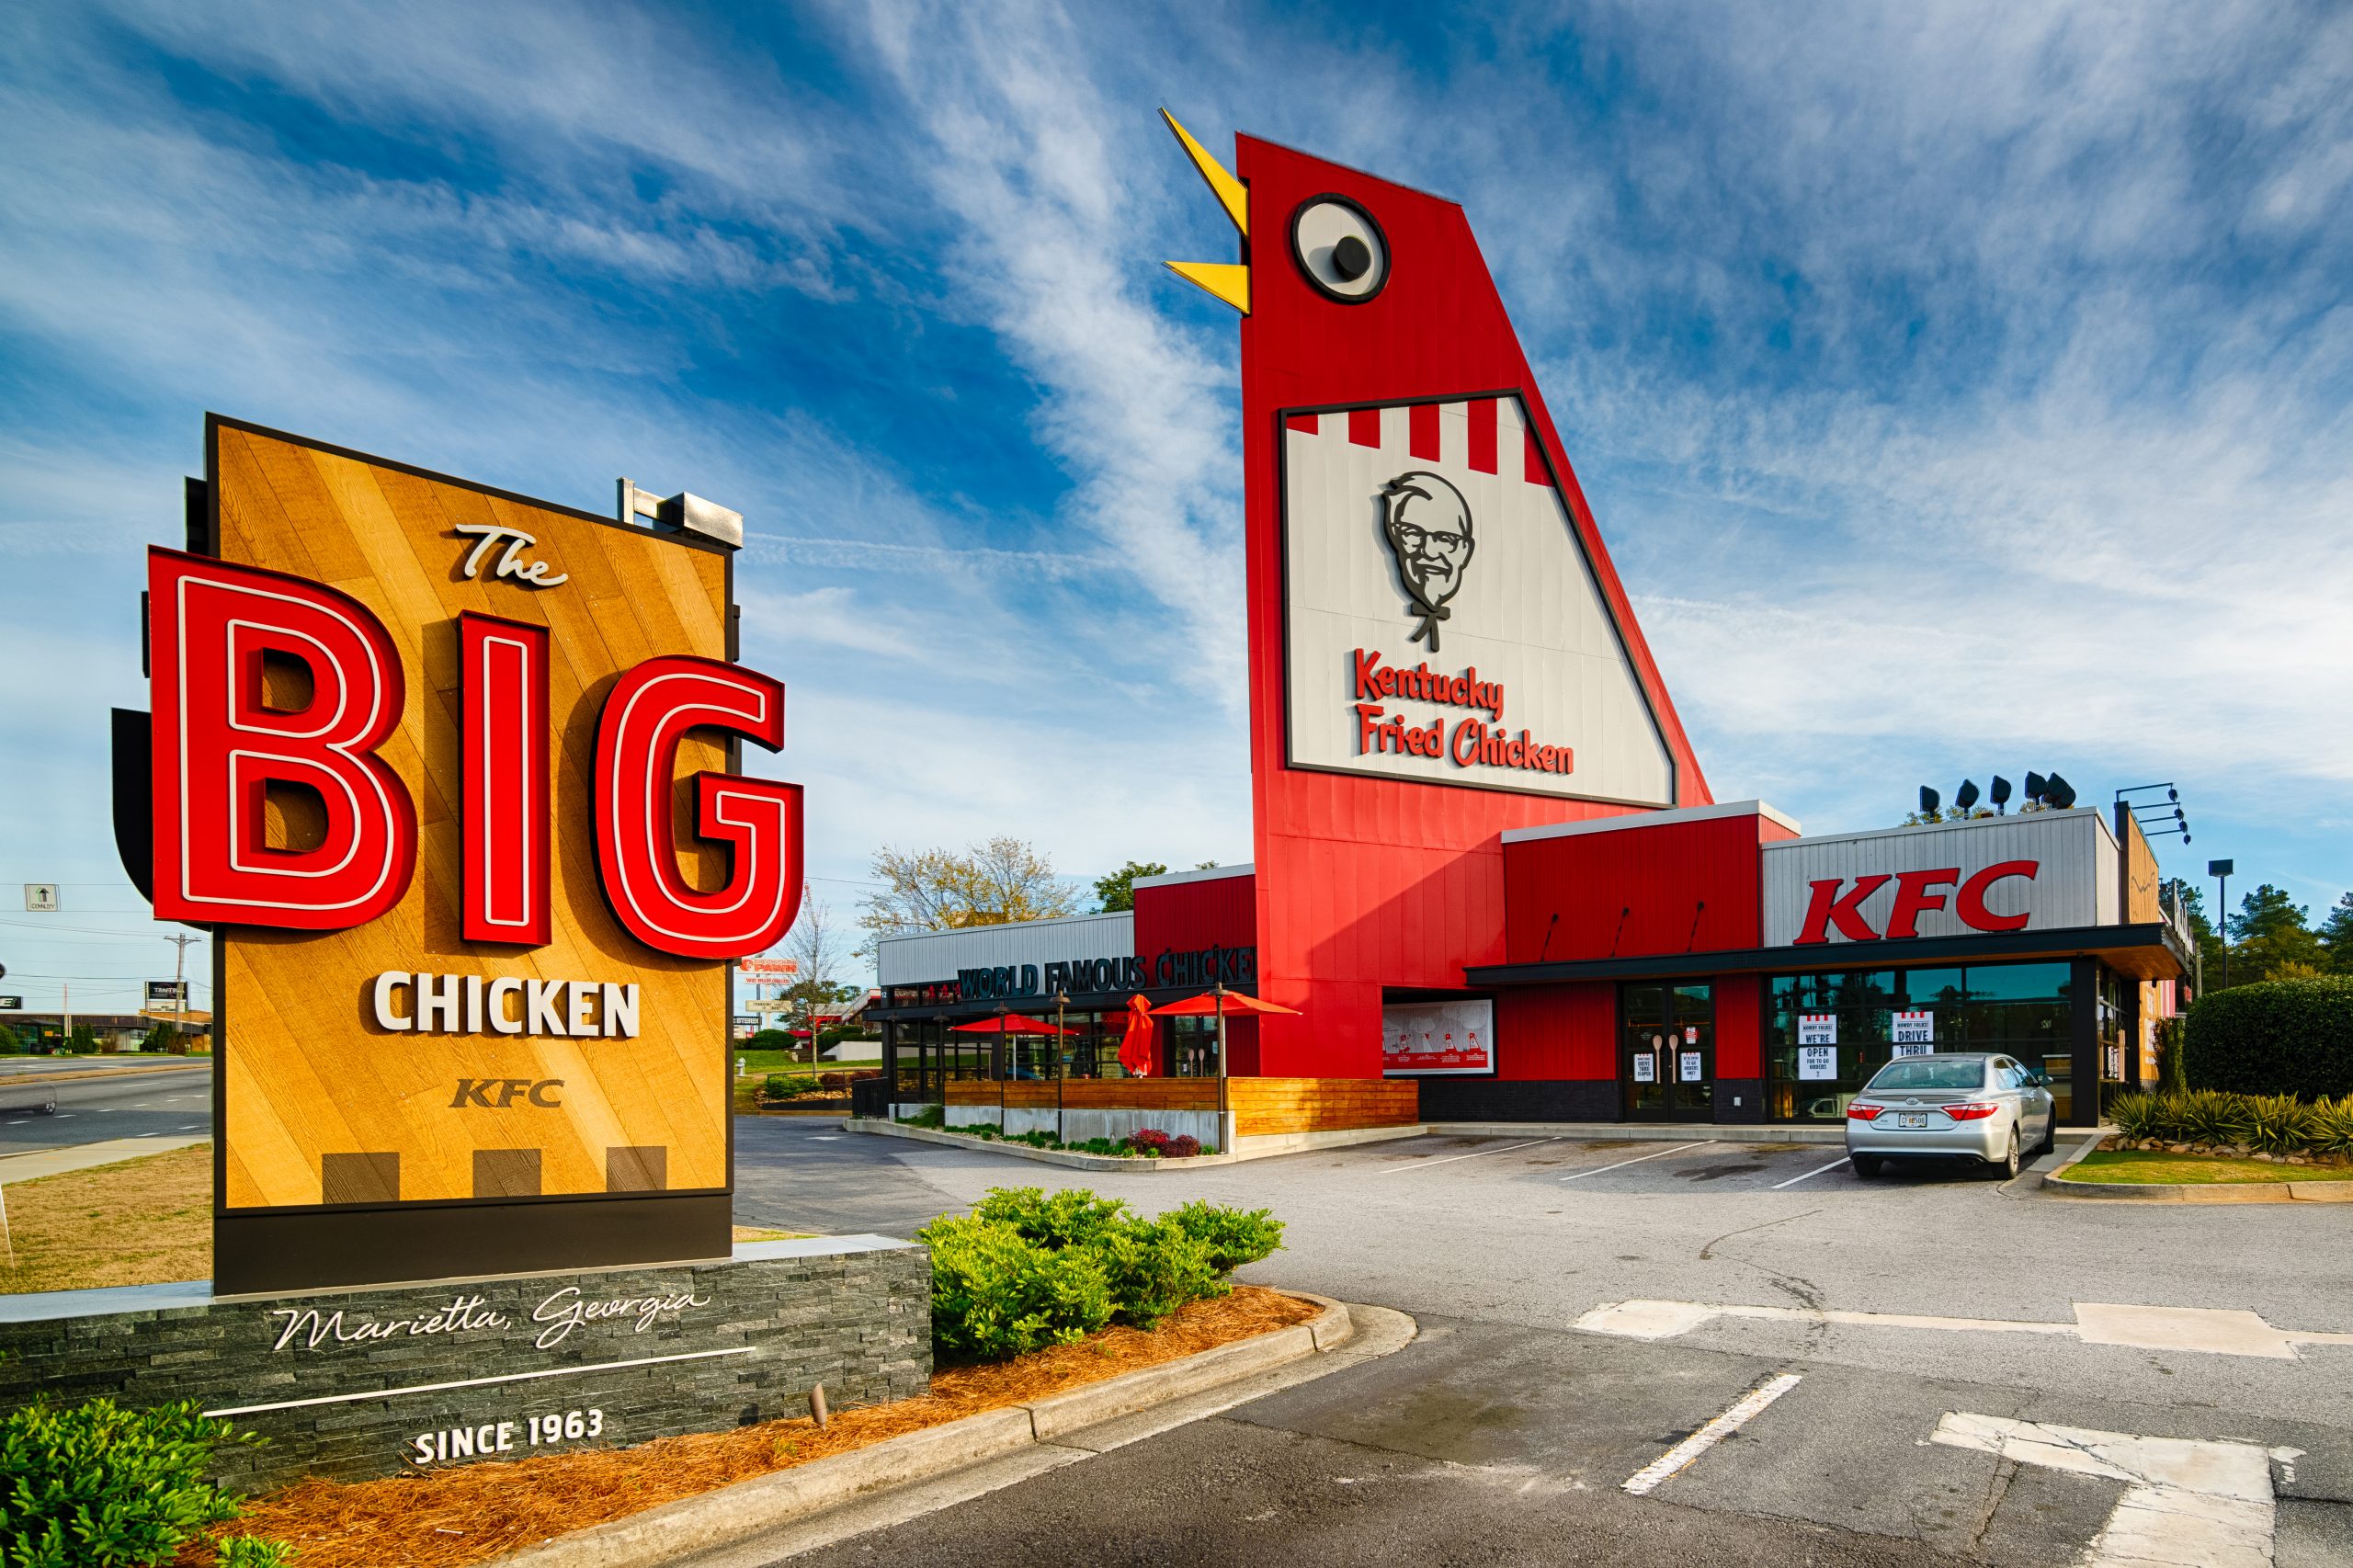 Big Chicken Restaurant to Open in Miami